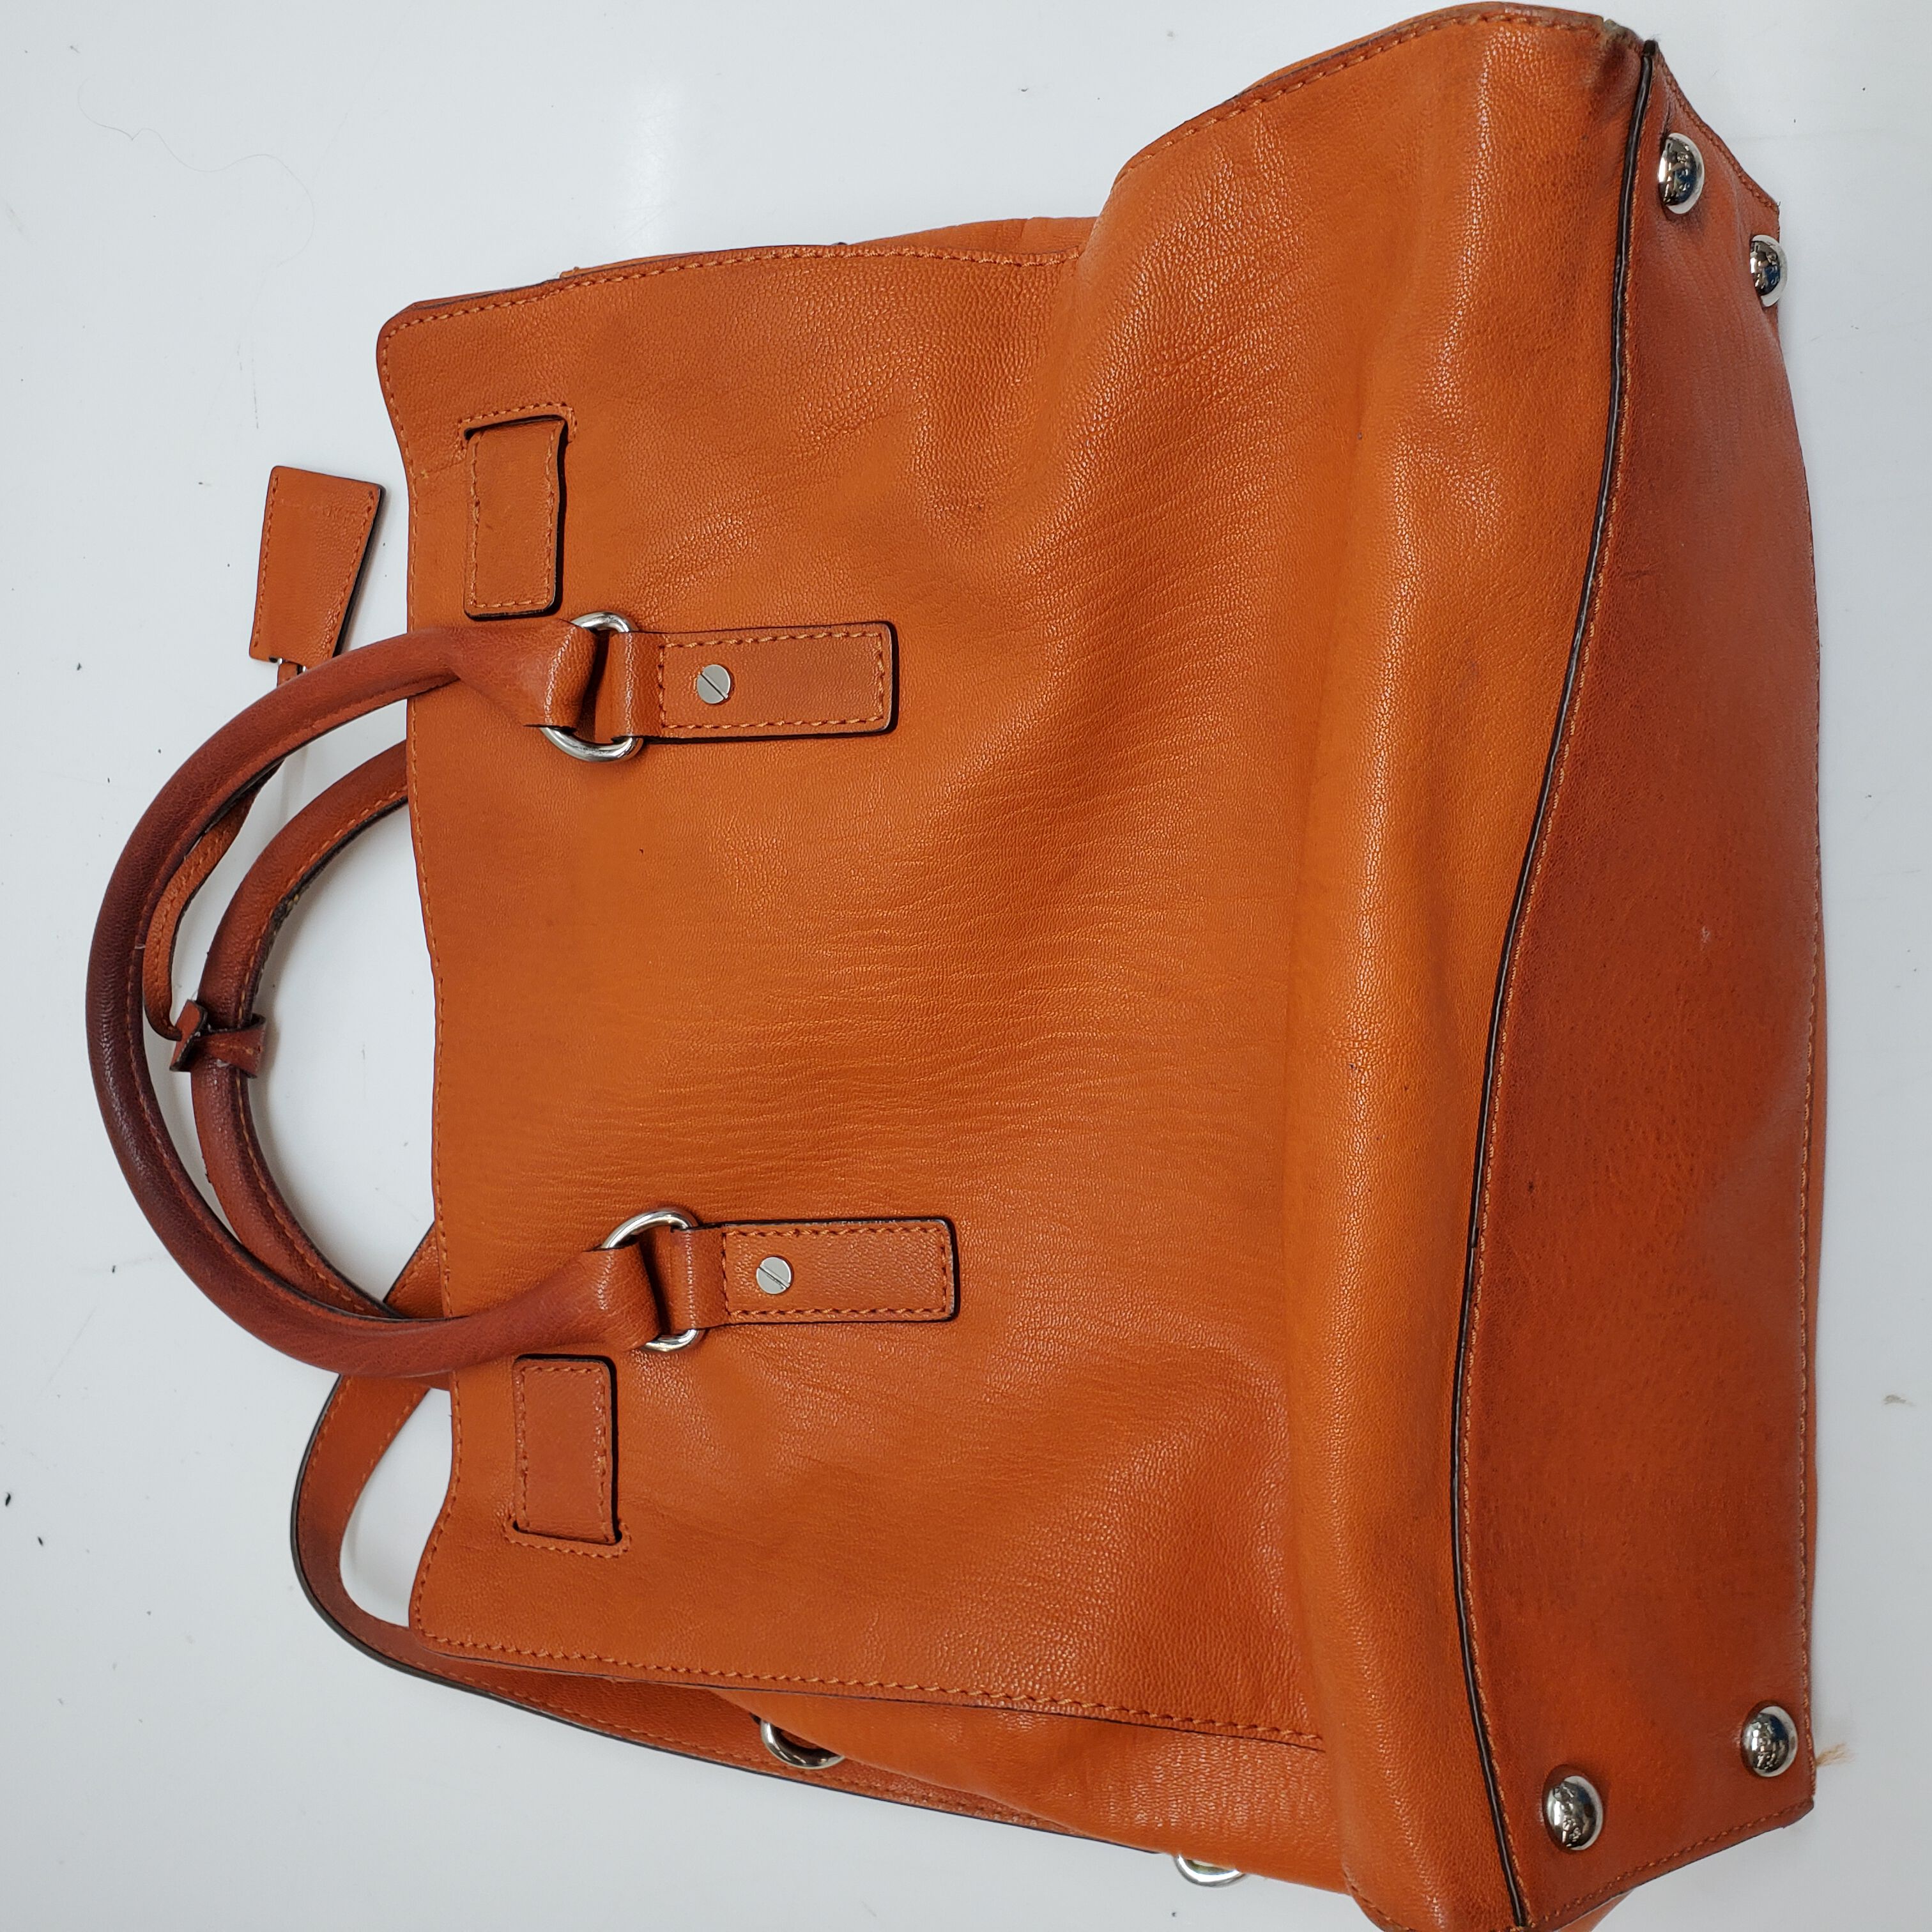 Michael Kors Charlotte Large Leather 3-in-1 Tote Shoulder Handbag - Poppy  Orange